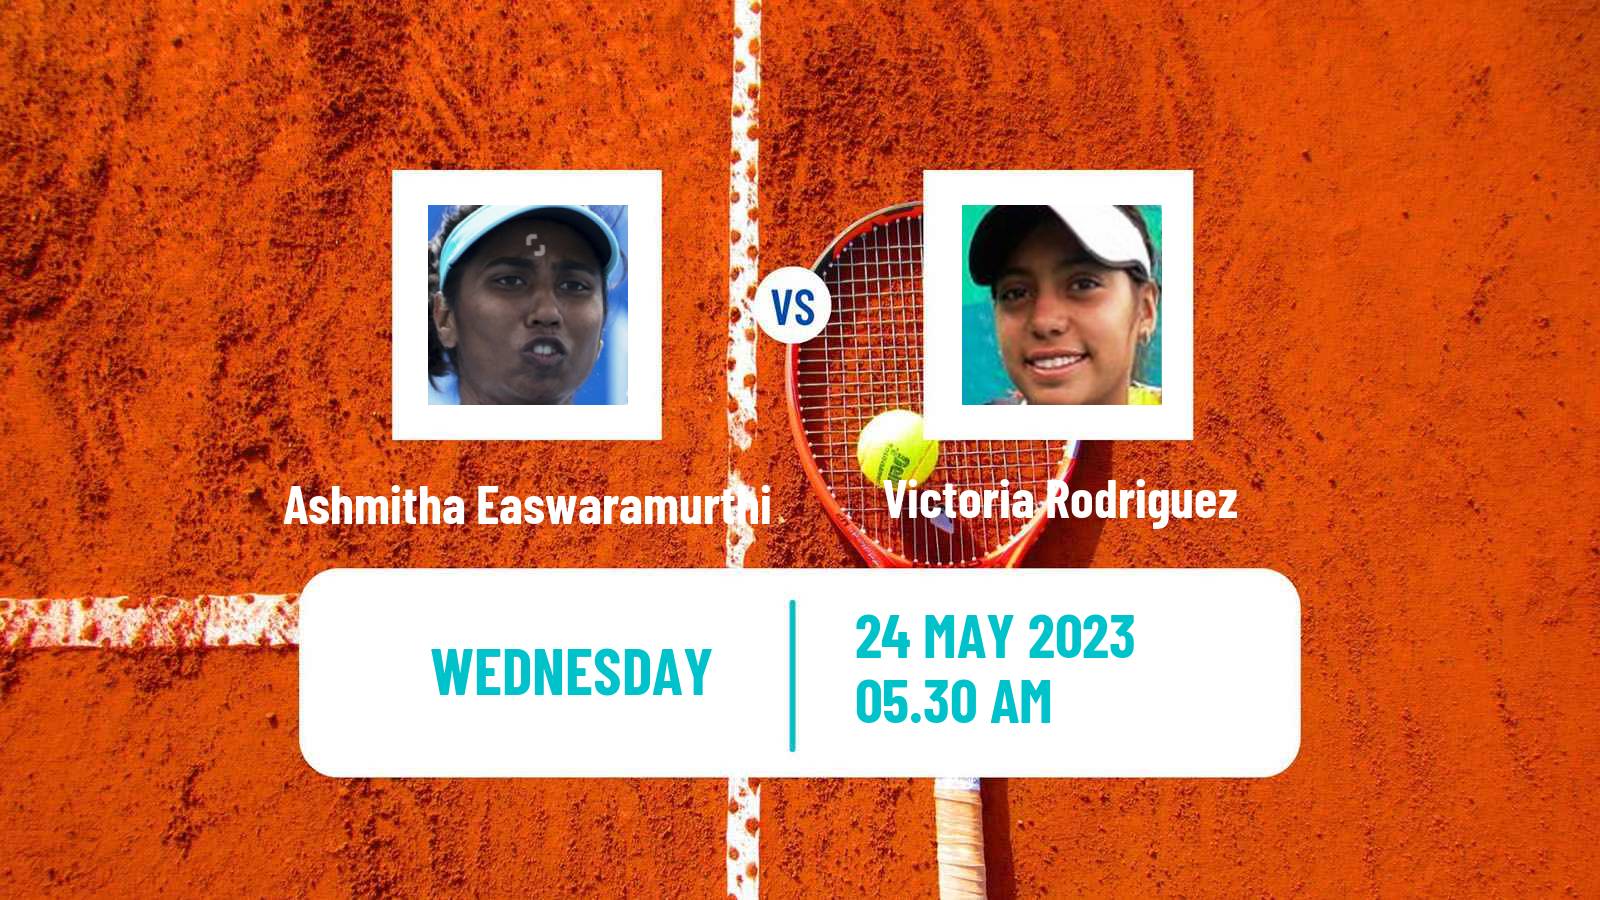 Tennis ITF W15 Malaga Women Ashmitha Easwaramurthi - Victoria Rodriguez